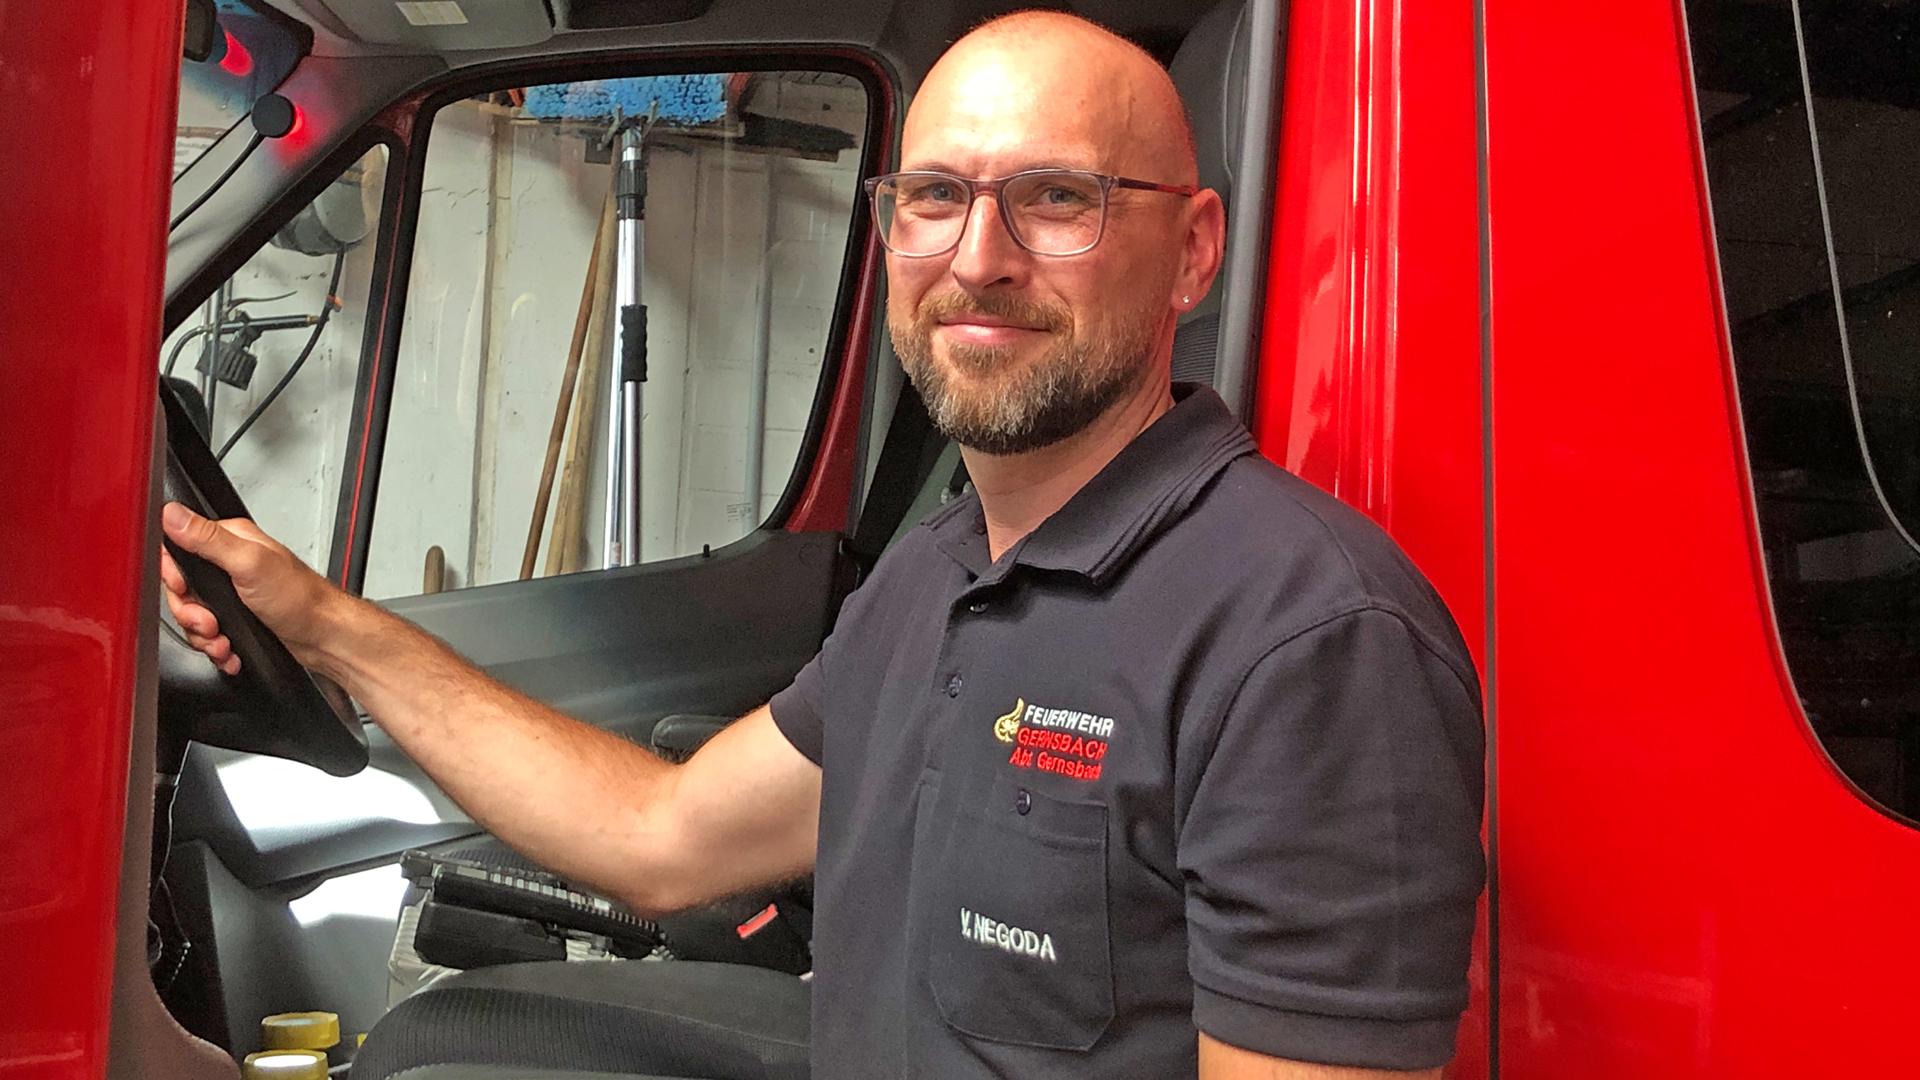 Vjaceslav Negoda bringt sich unter anderem als Gerätewart-Helfer bei der Freiwilligen Feuerwehr in Gernsbach ein.